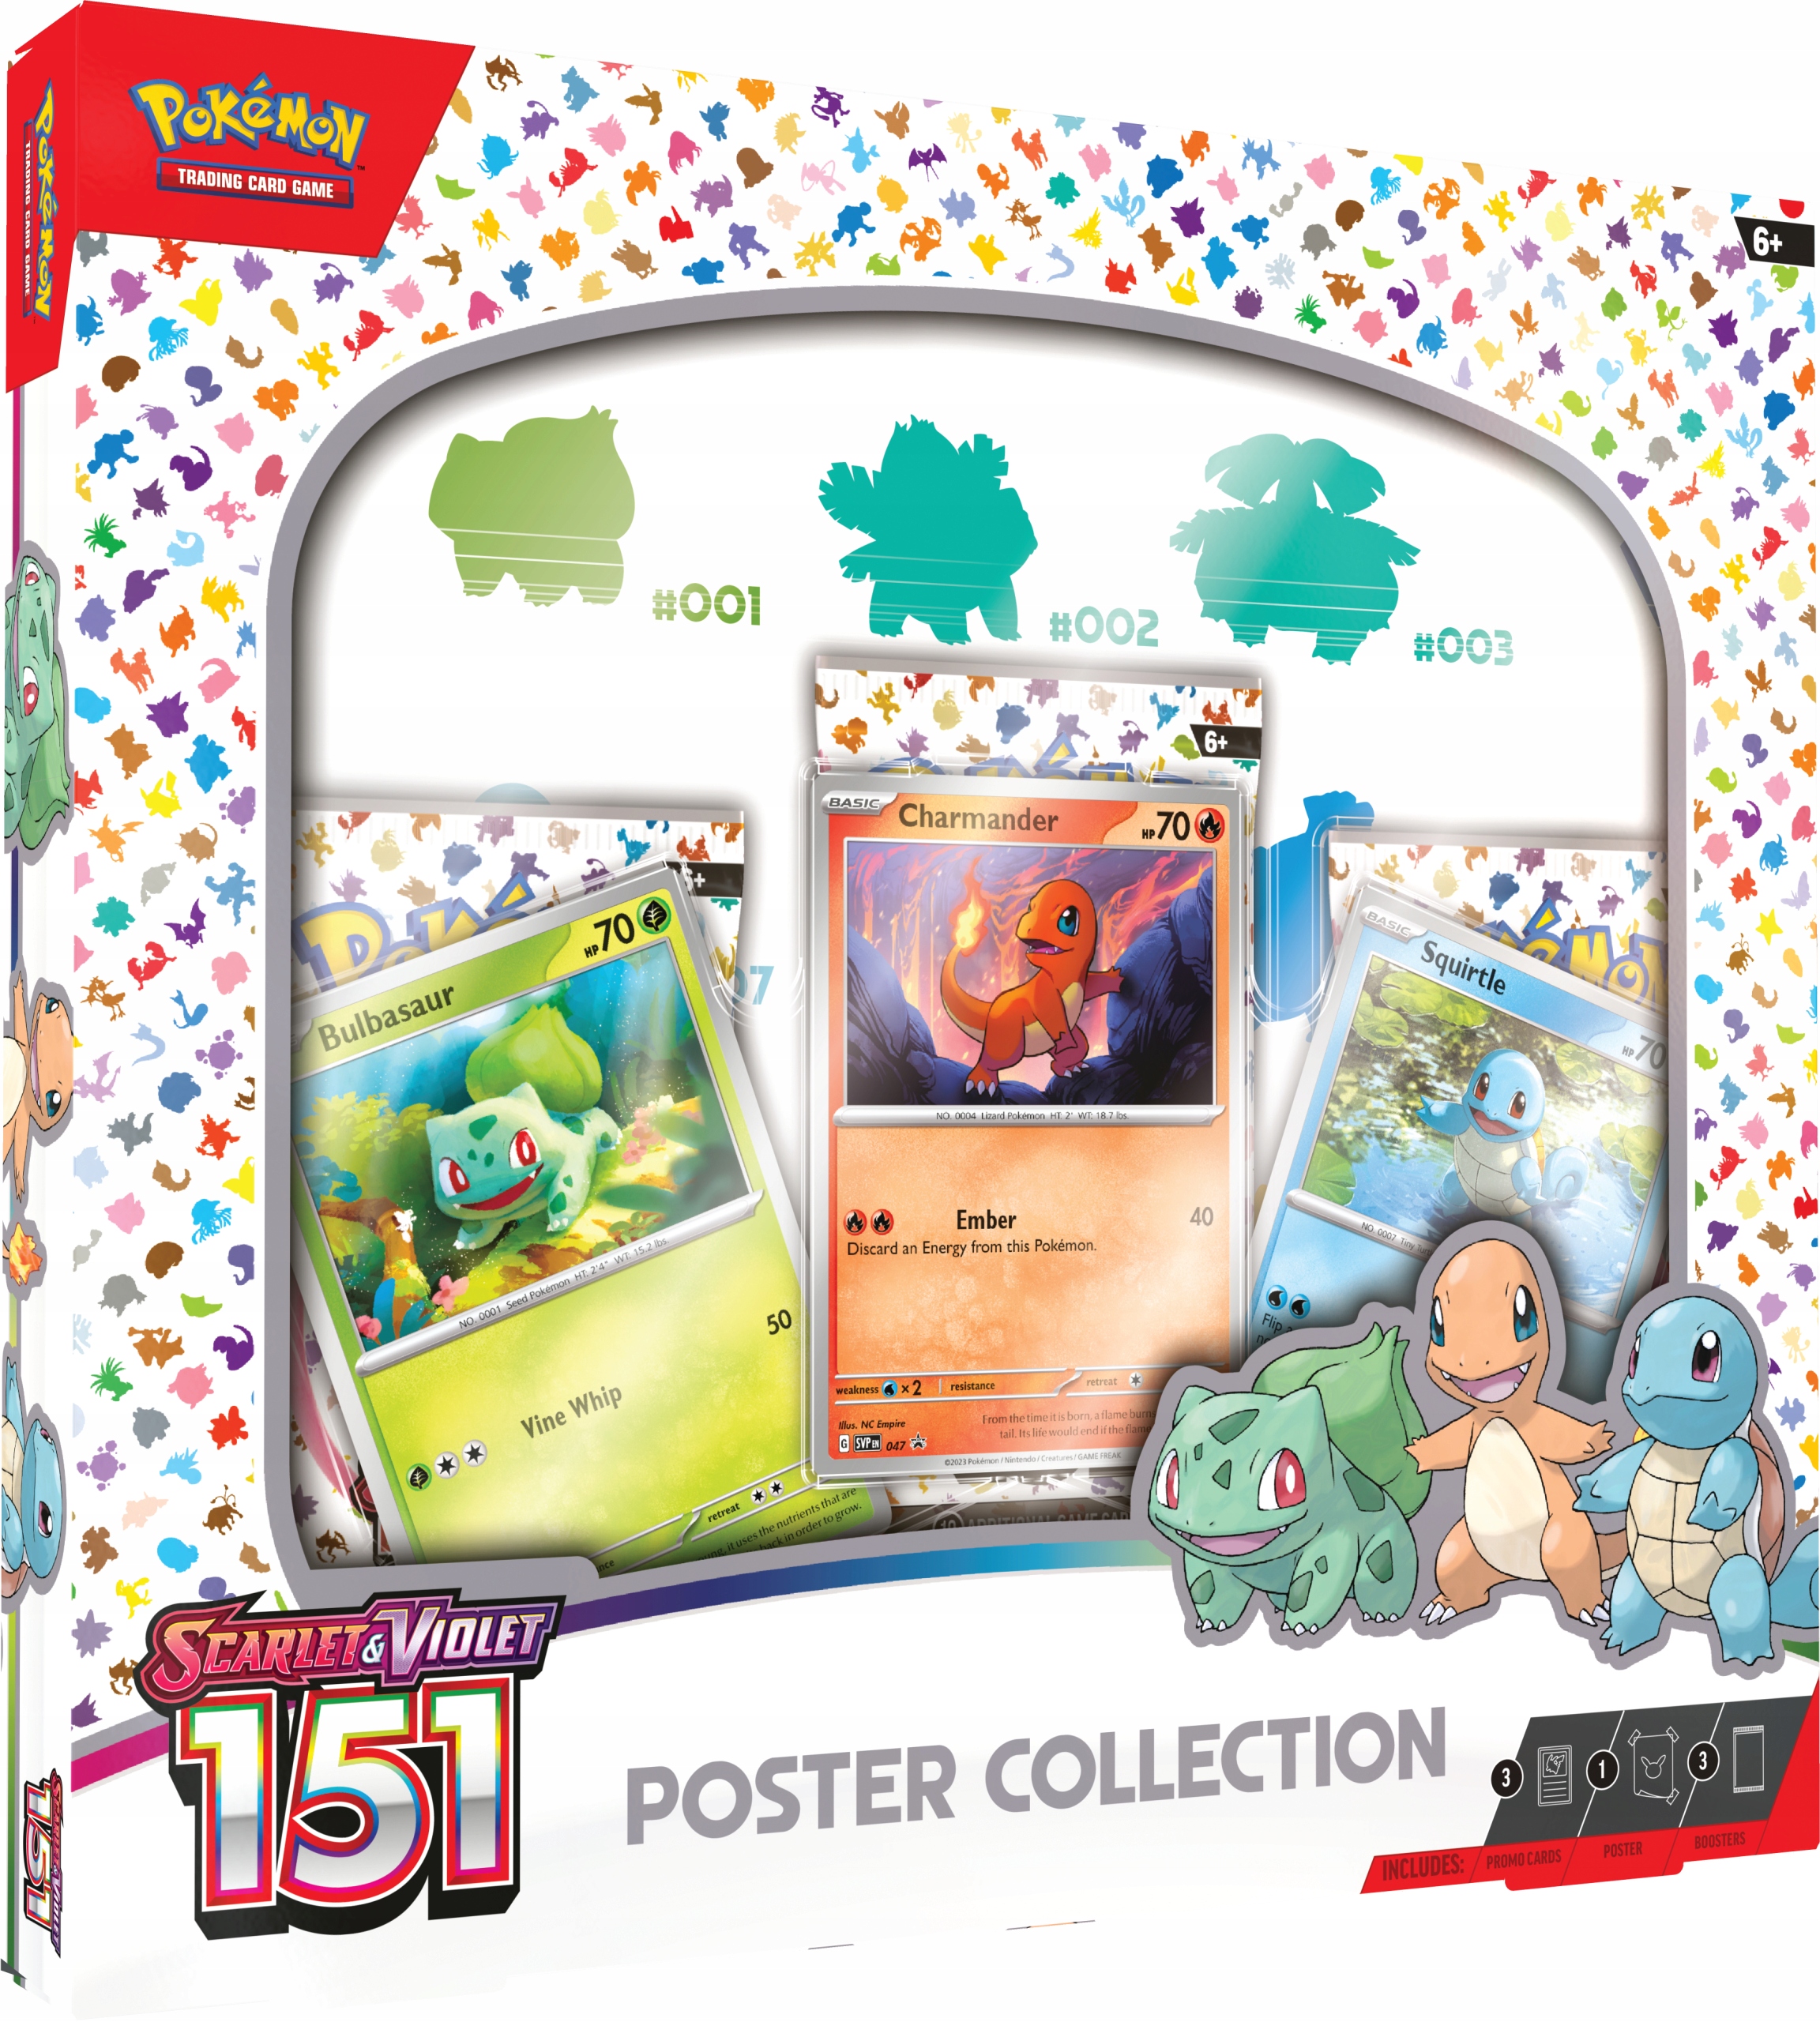 Pokémon Kanto 151 Poster 61x91.5cm, pokemon 151 français